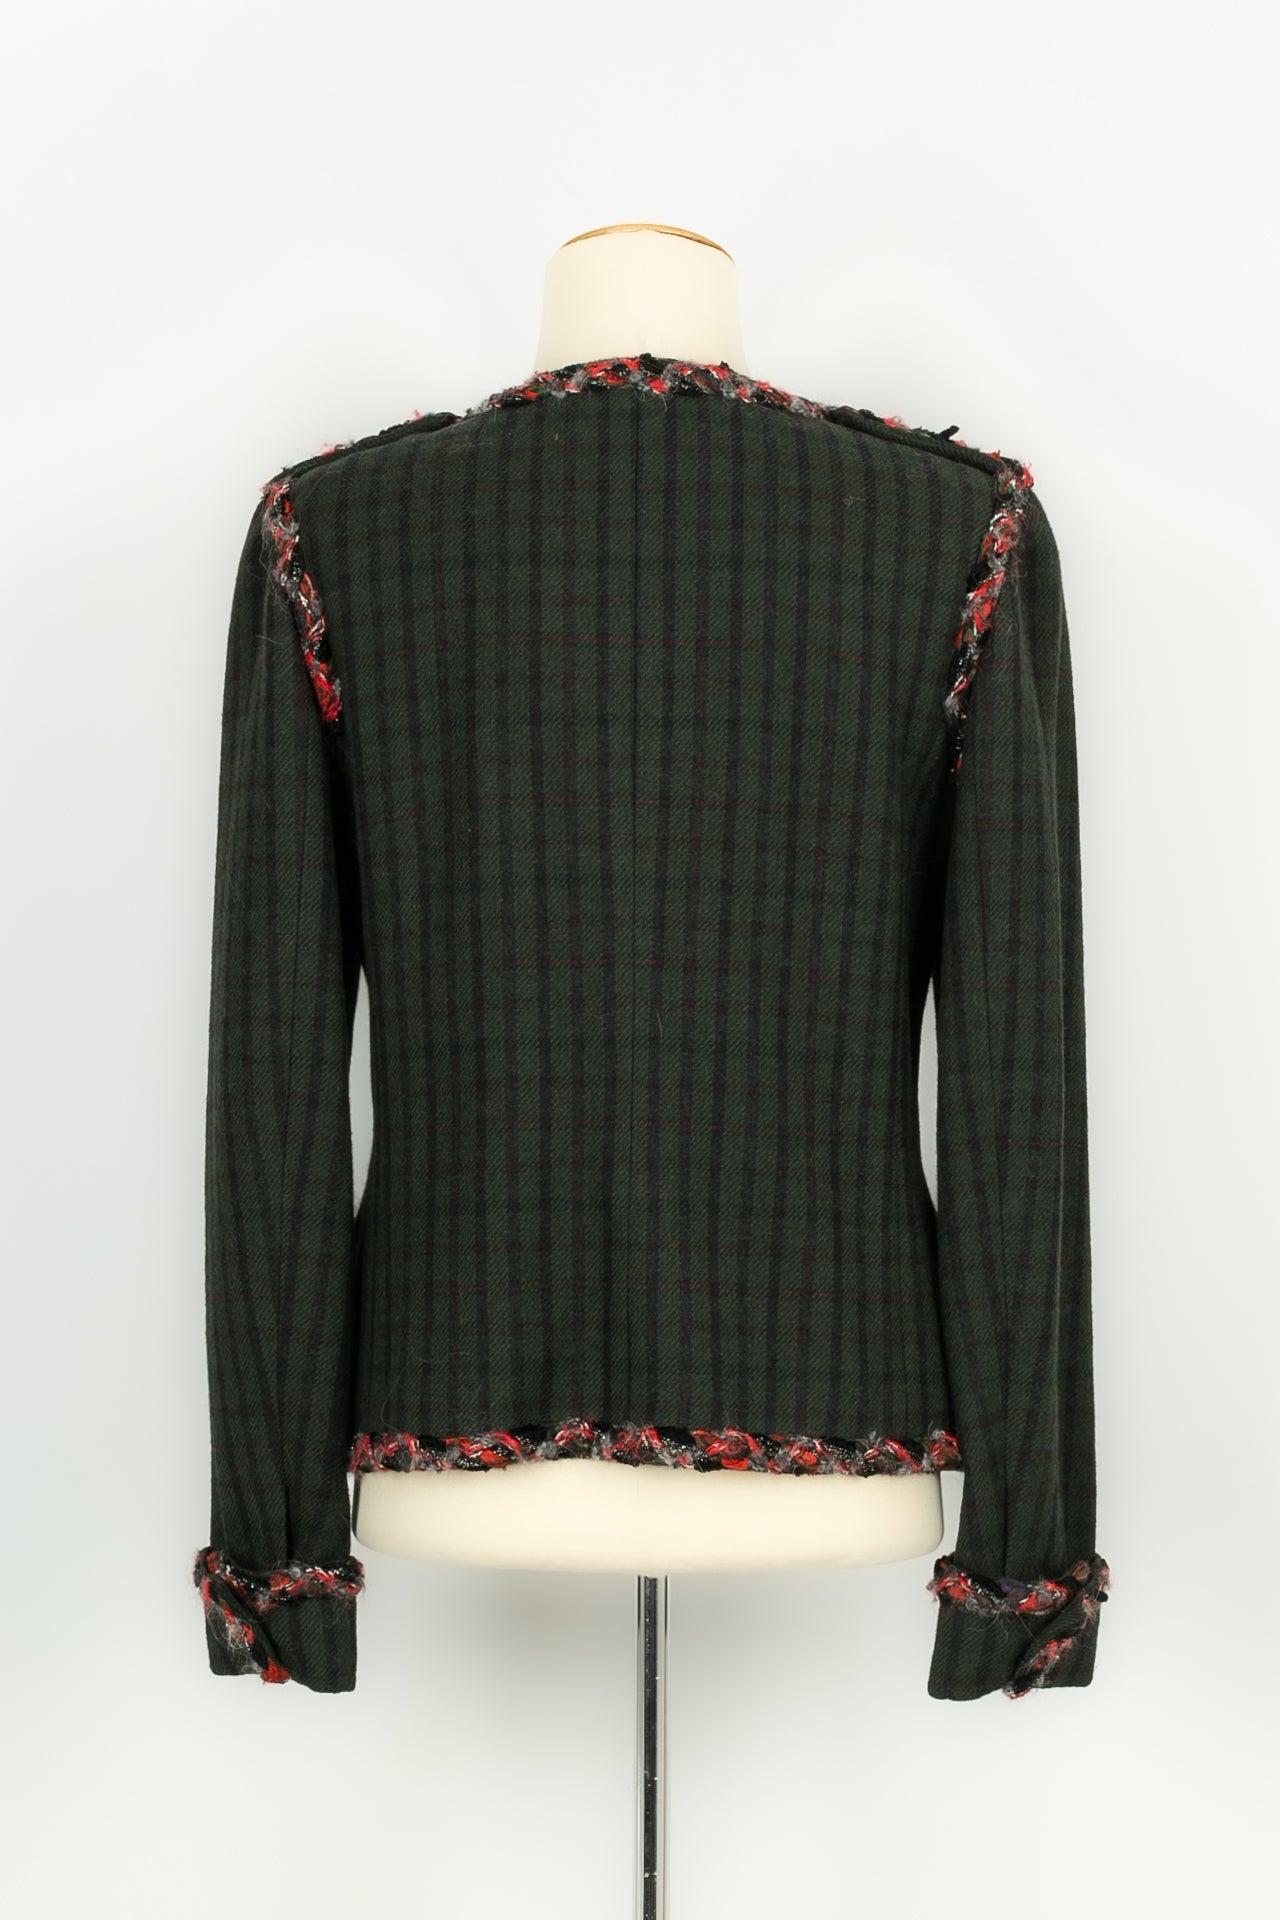 Black Chanel Woolen Jacket Paris-Edinburgh, 2012/2013